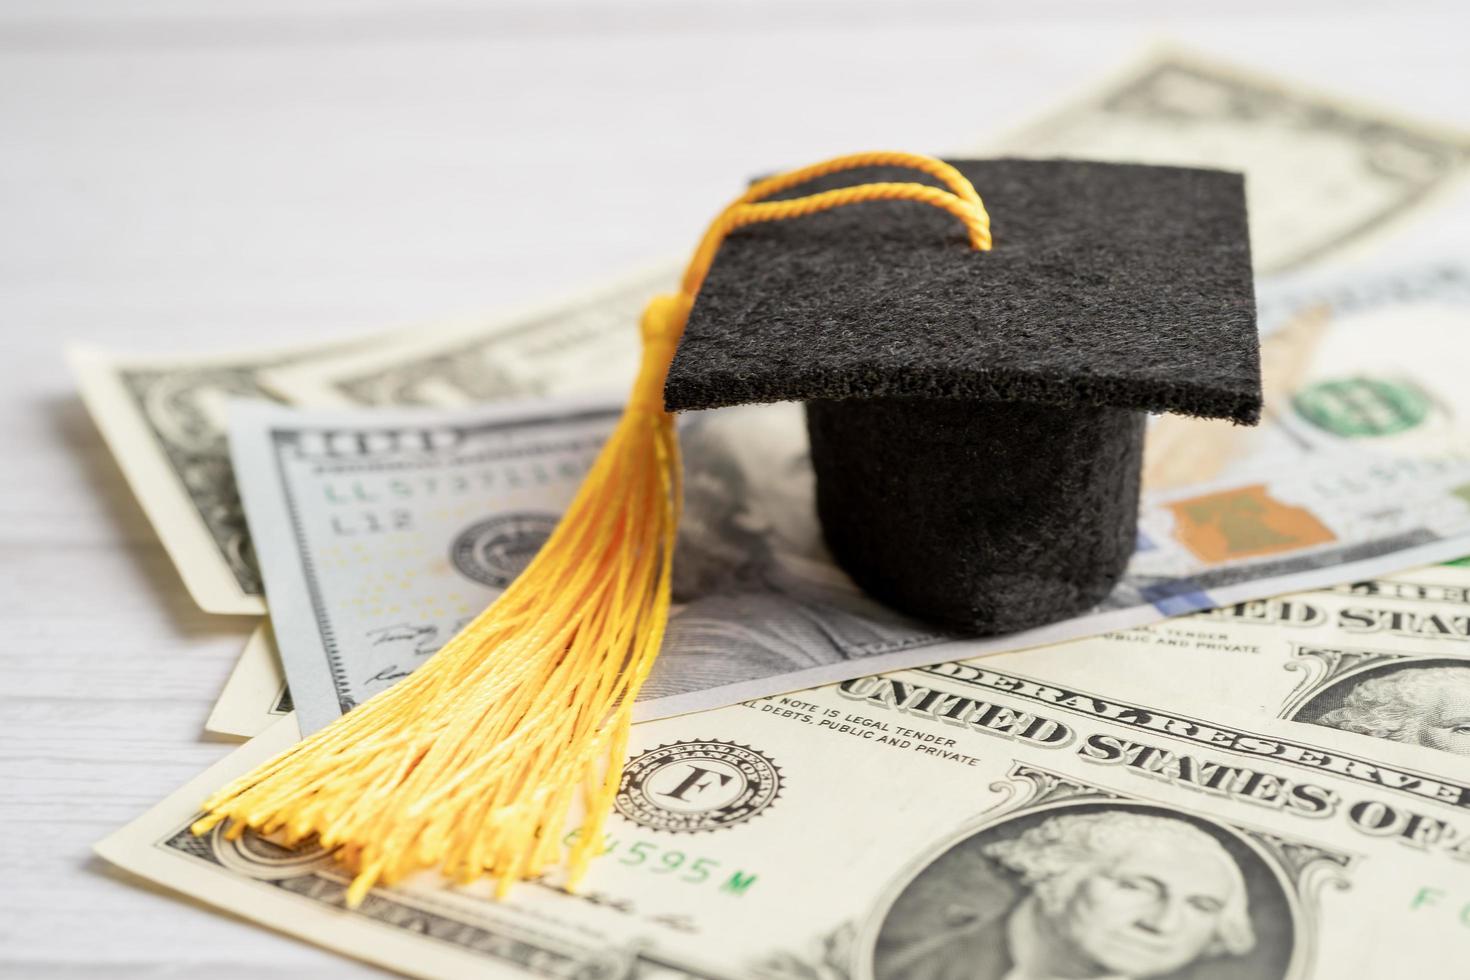 sombrero de la brecha de graduación en el dinero de los billetes en dólares estadounidenses, concepto de enseñanza de aprendizaje de la tarifa de estudio de educación. foto